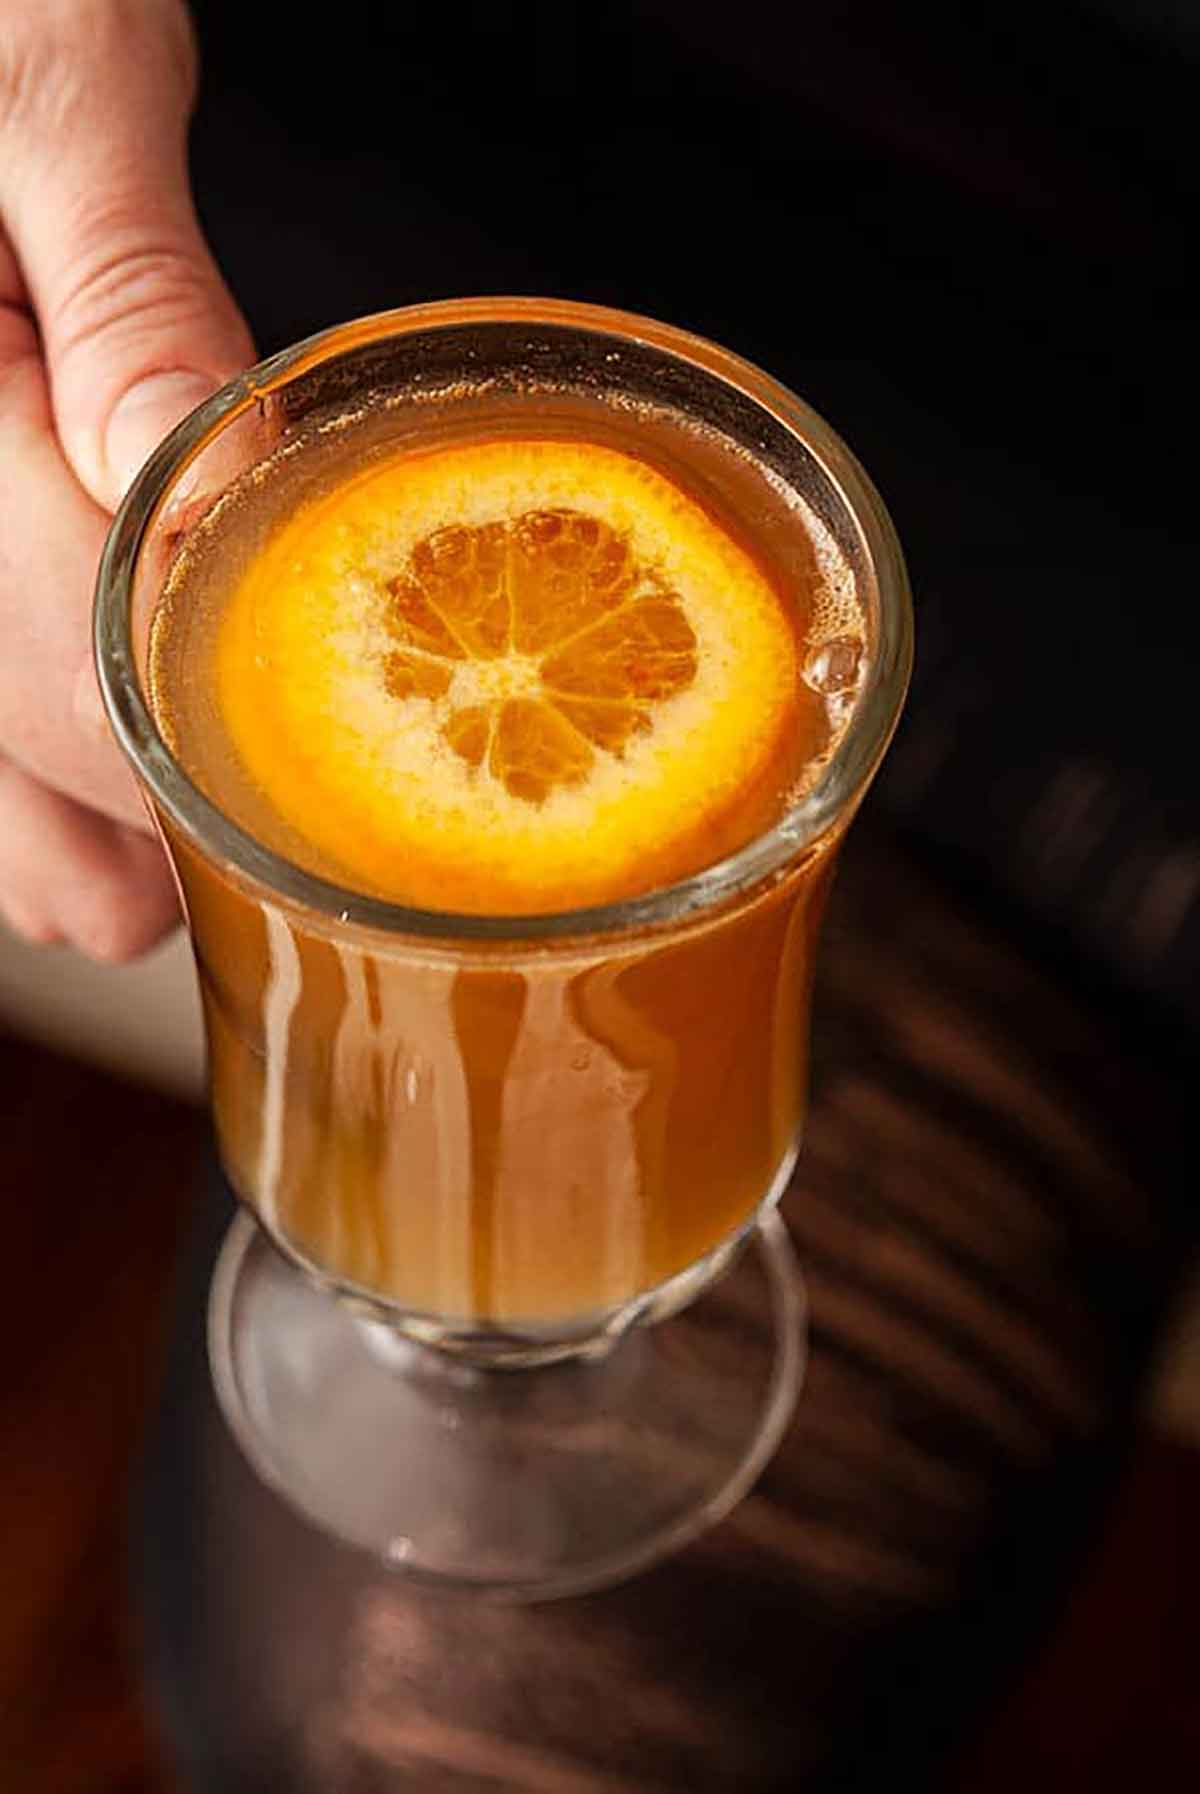 A hand holding a mug of cider whisky, garnished with a sliced orange.